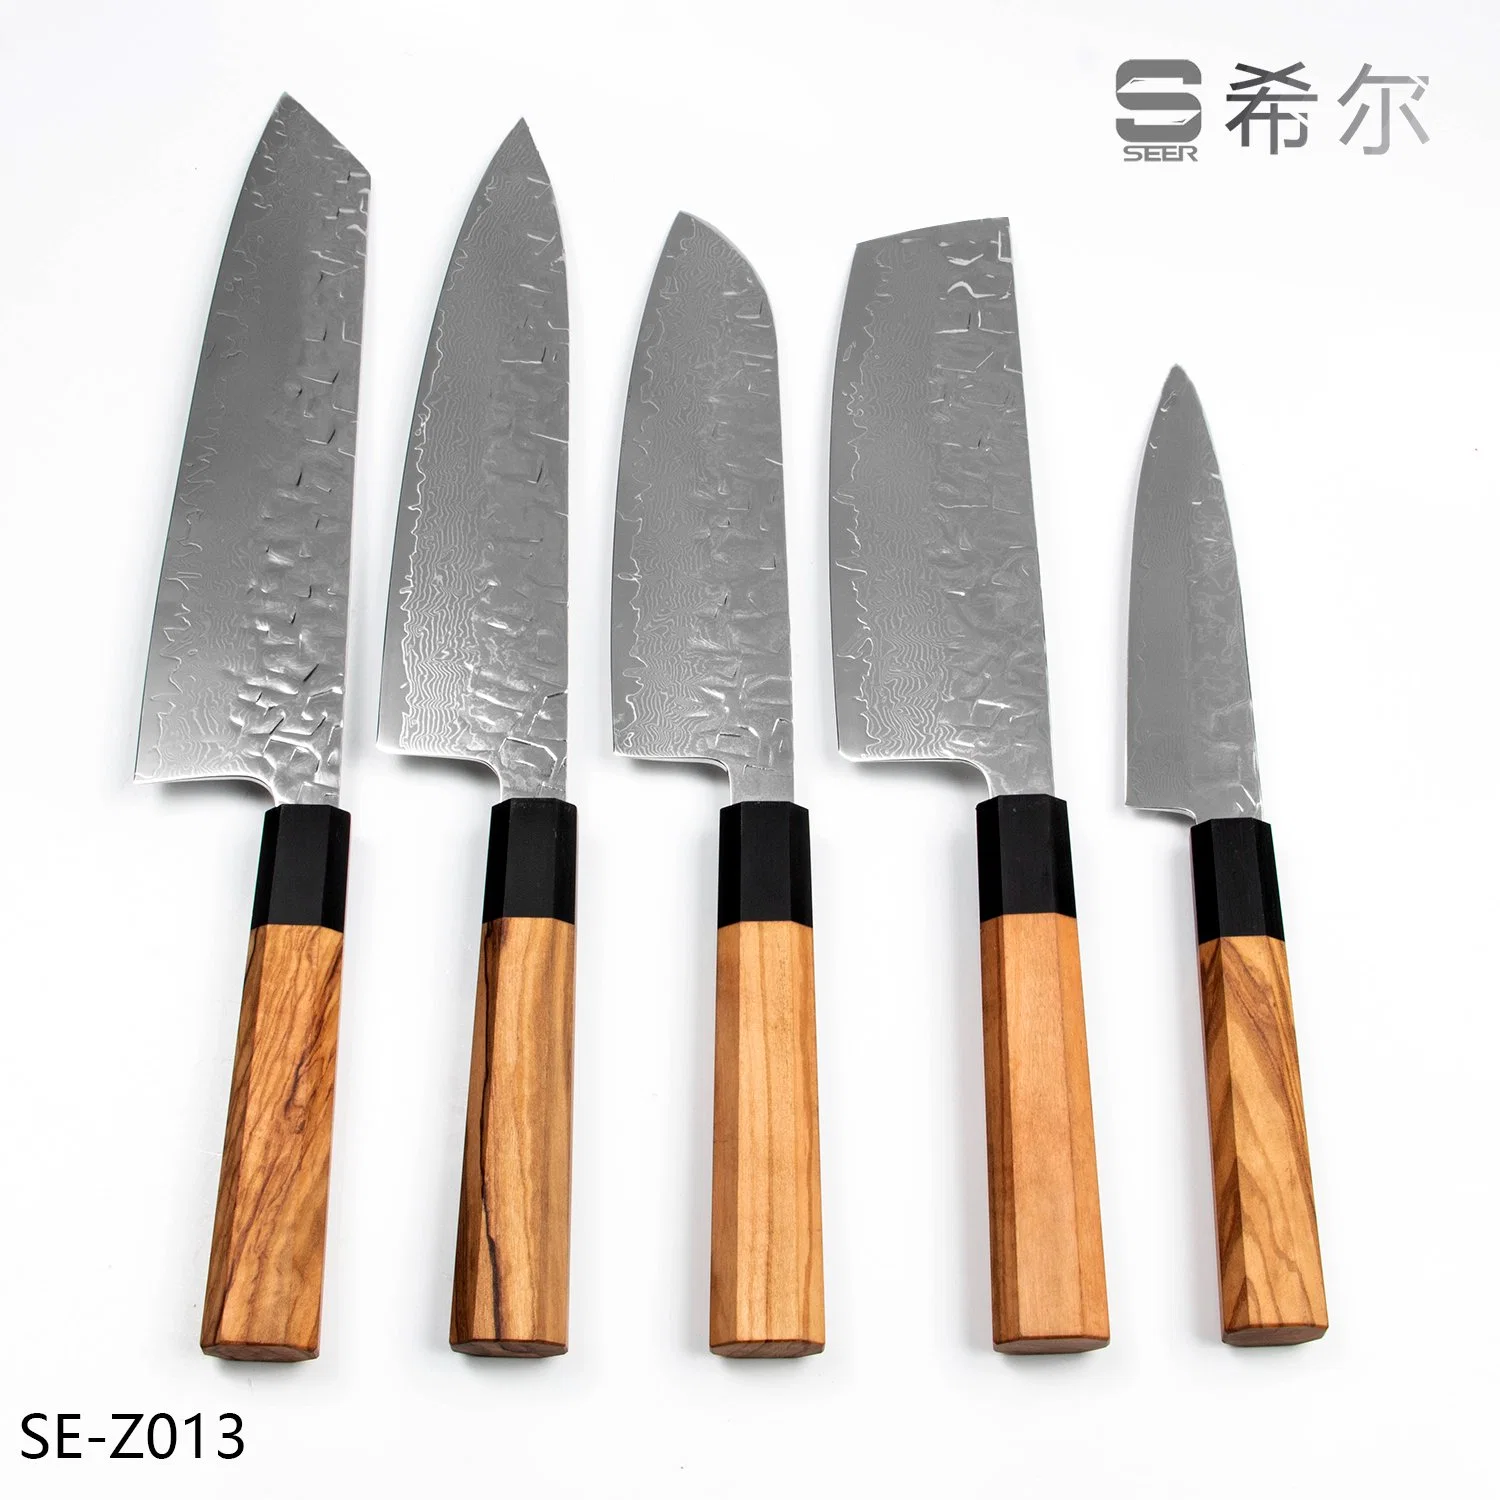 Juego de cuchillos de Damasco/cuchillo de Janpanese/cuchillo de cocina con mango de madera de olívico (se-Z013)